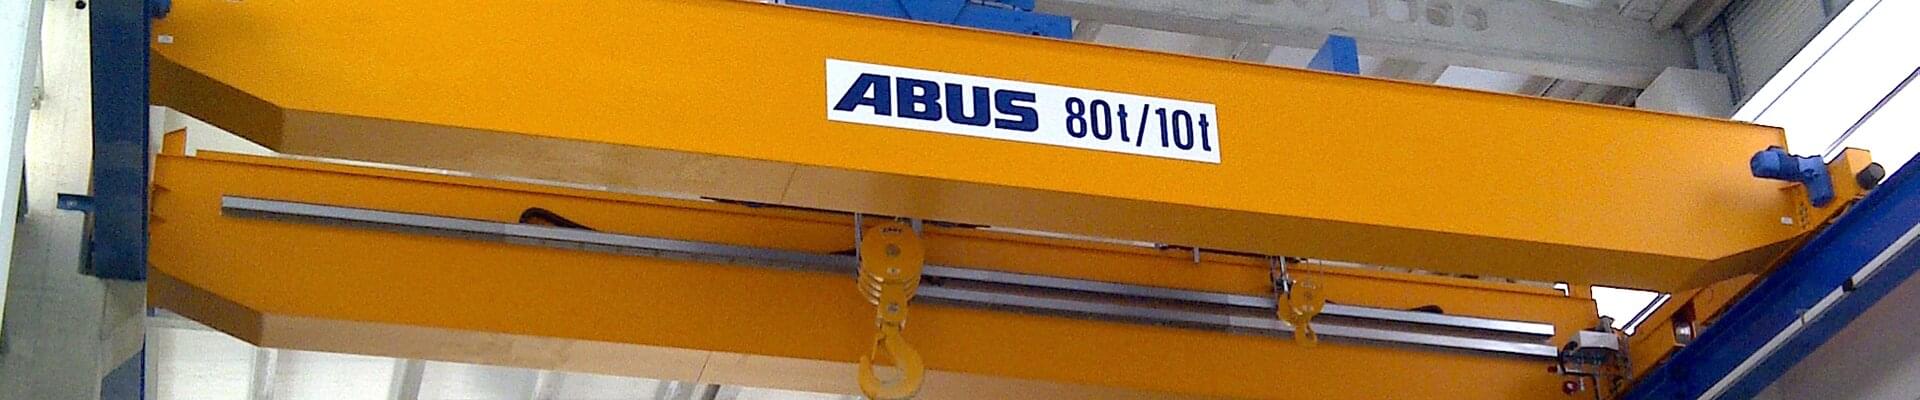 ABUS-bilkran med 80t/10t lastkapacitet i ett skeppsbyggnadsföretag i nordvästra Spanien 